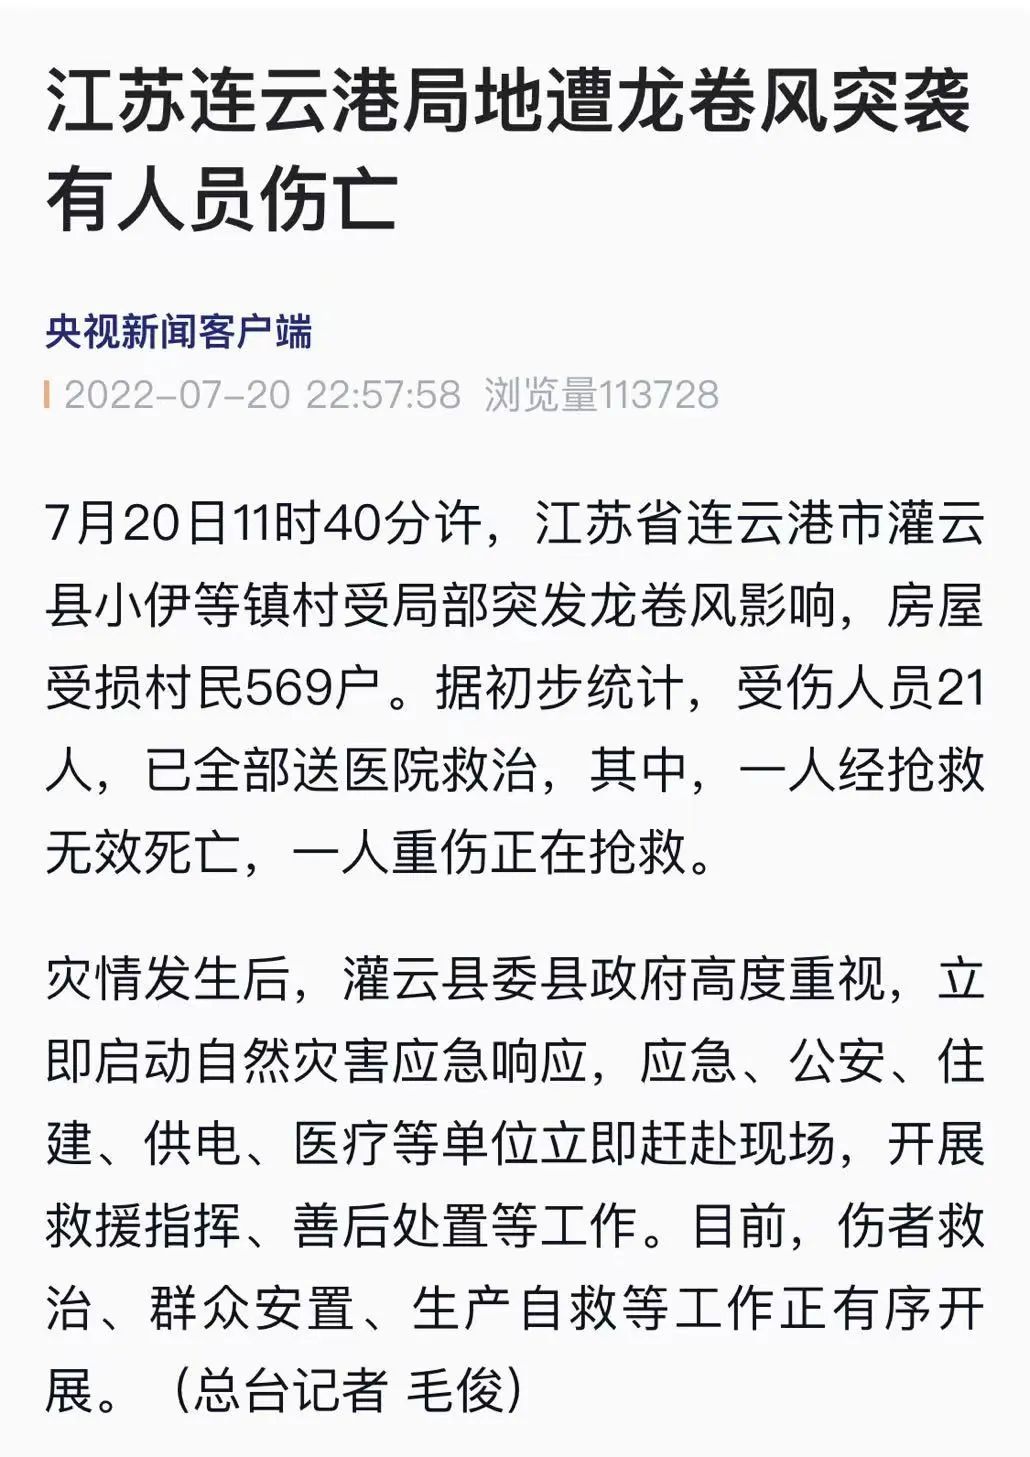 江苏连云港出现龙卷风灾害 已致2200余人受灾